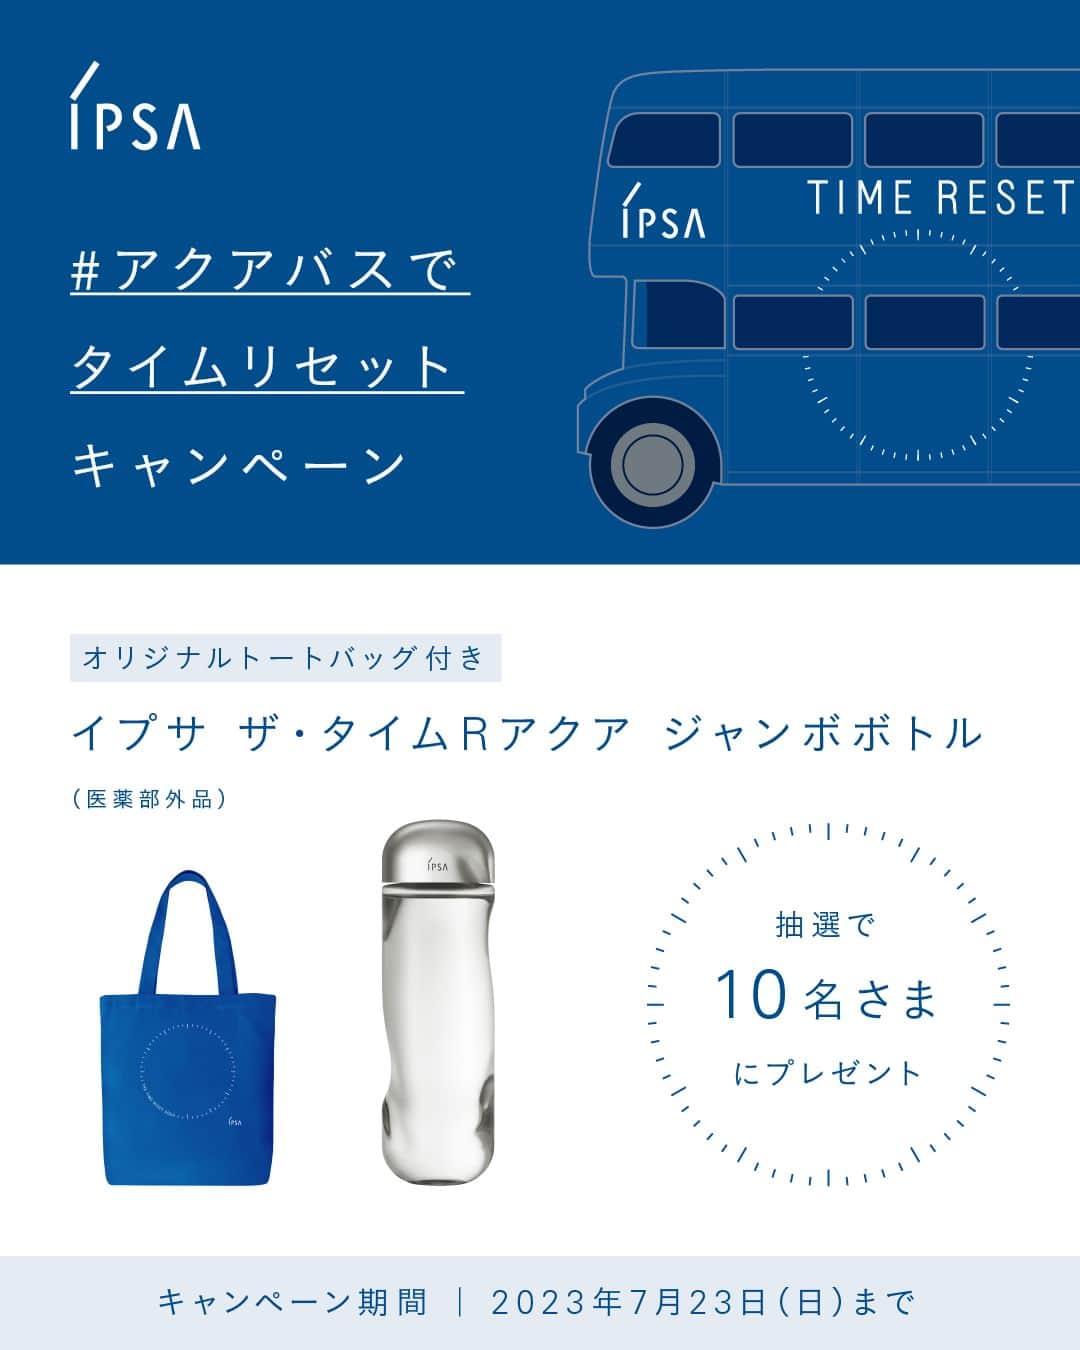 IPSA Japanのインスタグラム：「“#アクアバスでタイムリセット キャンペーン"  たっぷり使える、通常の1.5倍サイズの「ザ・タイムR アクア 限定サイズ （医薬部外品）」と「オリジナルトートバッグ」を抽選でプレゼントします。 みずみずしく水分補給して、気分をリフレッシュしませんか？  ＜参加方法＞ 1.このアカウントをフォロー 2.この投稿に『💙』でコメント 7/23(日) 23:59〆  キャンペーン詳細は、ストーリーズハイライトより特設サイトをご確認ください。  ----------------- ⚪︎イベント情報 7/15(土)～7/17(月・祝)、7/22(土)～7/23(日)、 原宿と表参道をつないで運行する「TIME RESET AQUA BUS」を原宿・表参道エリアで開催します。  各イベント会場では、限定キットやフレッシュなスペシャルドリンクの販売、 肌の水分保持力をチェックする測定など、様々なコンテンツをご用意。 ご来場いただいた方には、夏の肌にたっぷり水分補給することができるスキンケアサンプルセットをプレゼントいたします。  各会場により、営業時間、コンテンツが異なります。 詳しくはストーリーズハイライトより特設サイトをご確認ください。  夏のダメージをうけた肌と心をリセットしに、ぜひお気軽にご来場ください。  ※限定キット、サンプルセット、スペシャルドリンクはなくなり次第終了となります。 ※スペシャルドリンクは、Farmers Market にて7/22(土)～7/23(日)のみ、1杯500円(税込)で販売しています。  #IPSA #イプサ #ザタイムRアクア #アクアバスでタイムリセット #TimeResetAquaBus #スキンケア #化粧水 #都内イベント #原宿 #表参道 #ビューティースクエア #BeautySquare #肌測定」